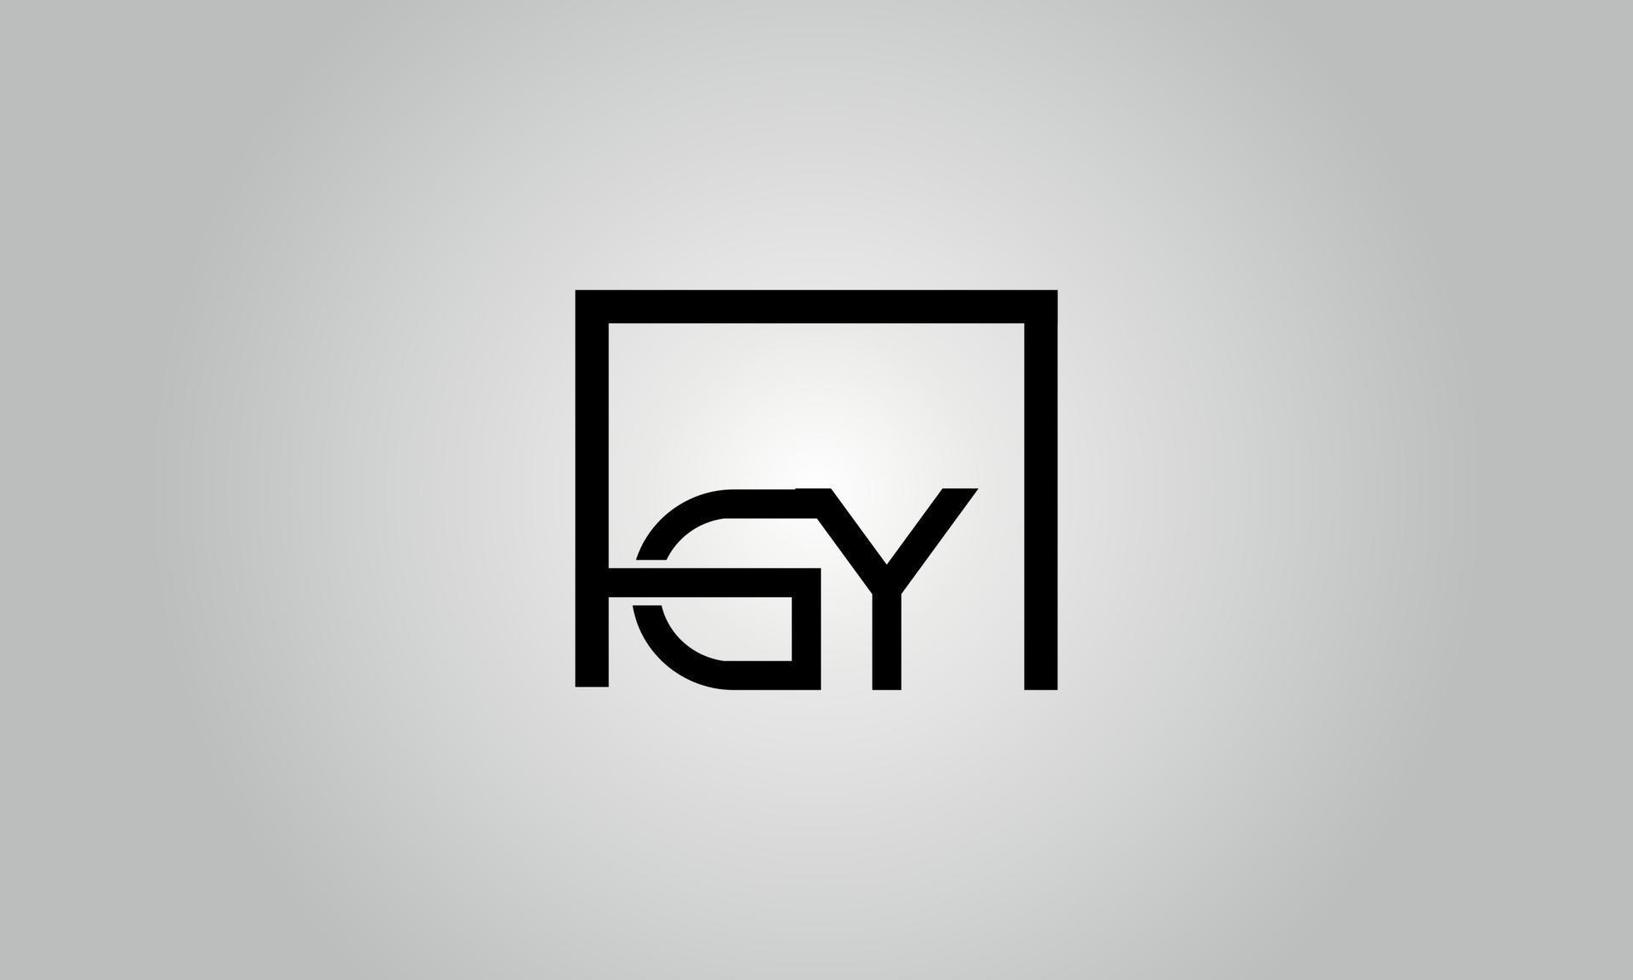 brief gy logo ontwerp. gy logo met plein vorm in zwart kleuren vector vrij vector sjabloon.